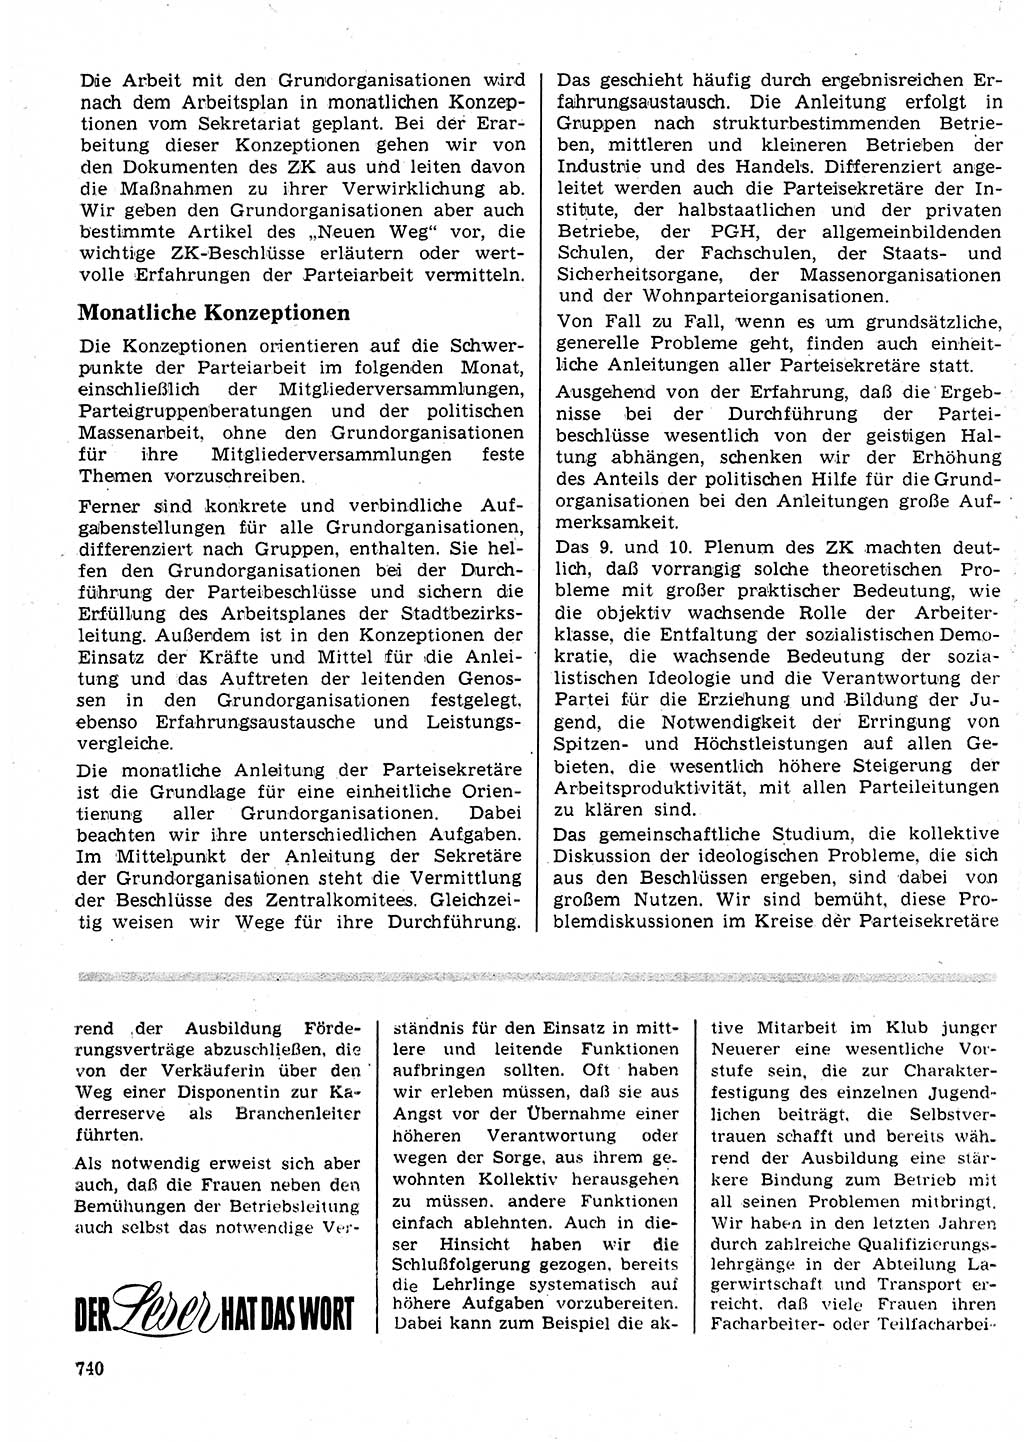 Neuer Weg (NW), Organ des Zentralkomitees (ZK) der SED (Sozialistische Einheitspartei Deutschlands) fÃ¼r Fragen des Parteilebens, 24. Jahrgang [Deutsche Demokratische Republik (DDR)] 1969, Seite 740 (NW ZK SED DDR 1969, S. 740)